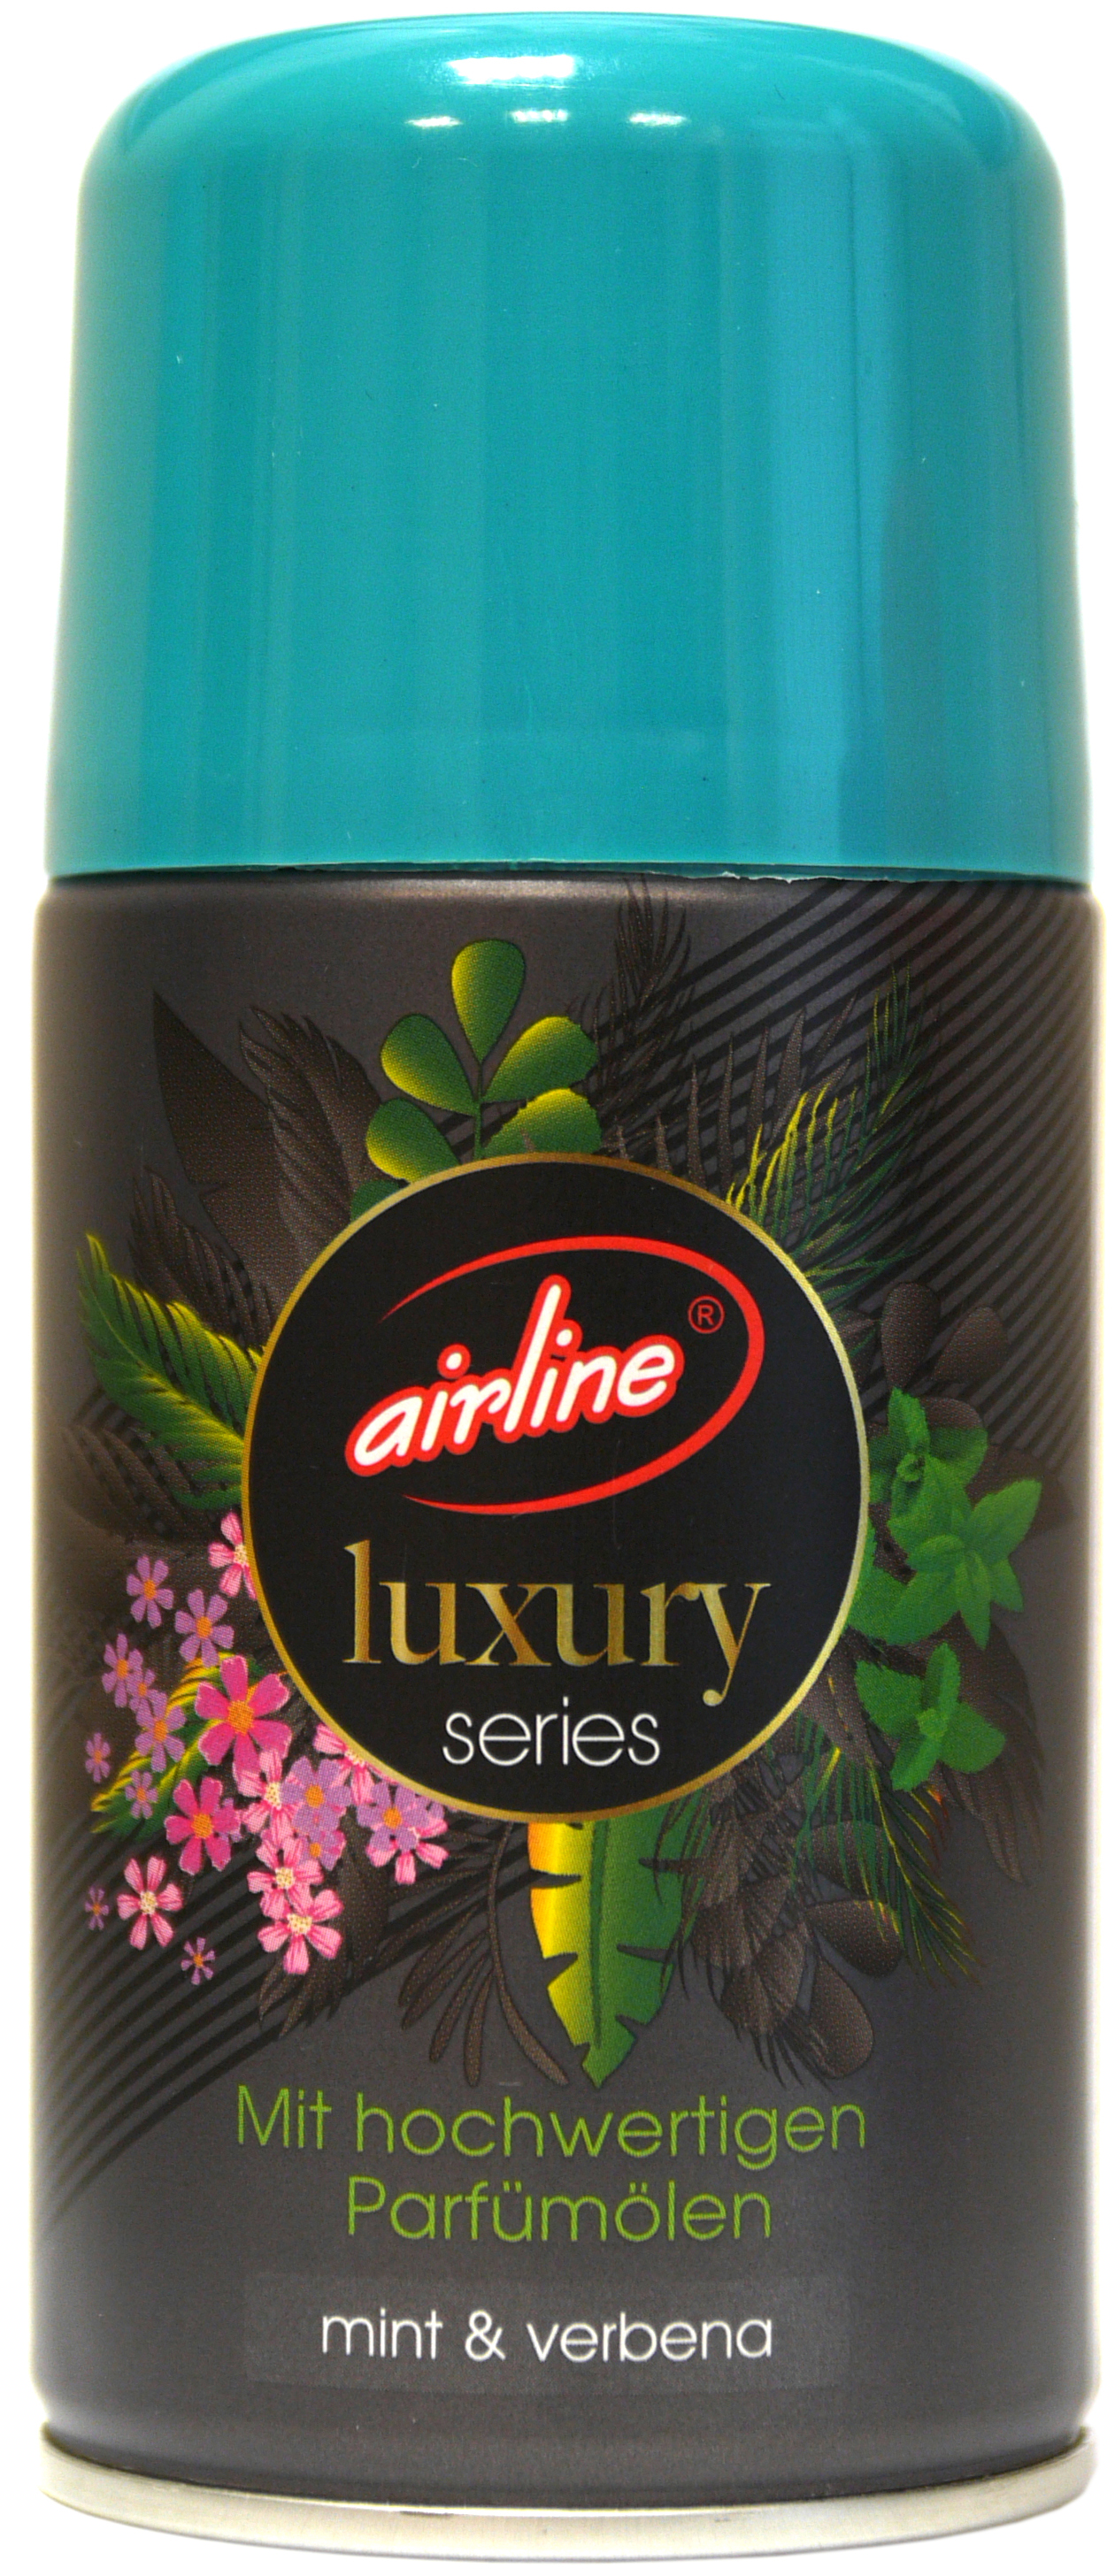 00521 - airline Luxury Series mint & verbena Nachfüllkartusche 250 ml